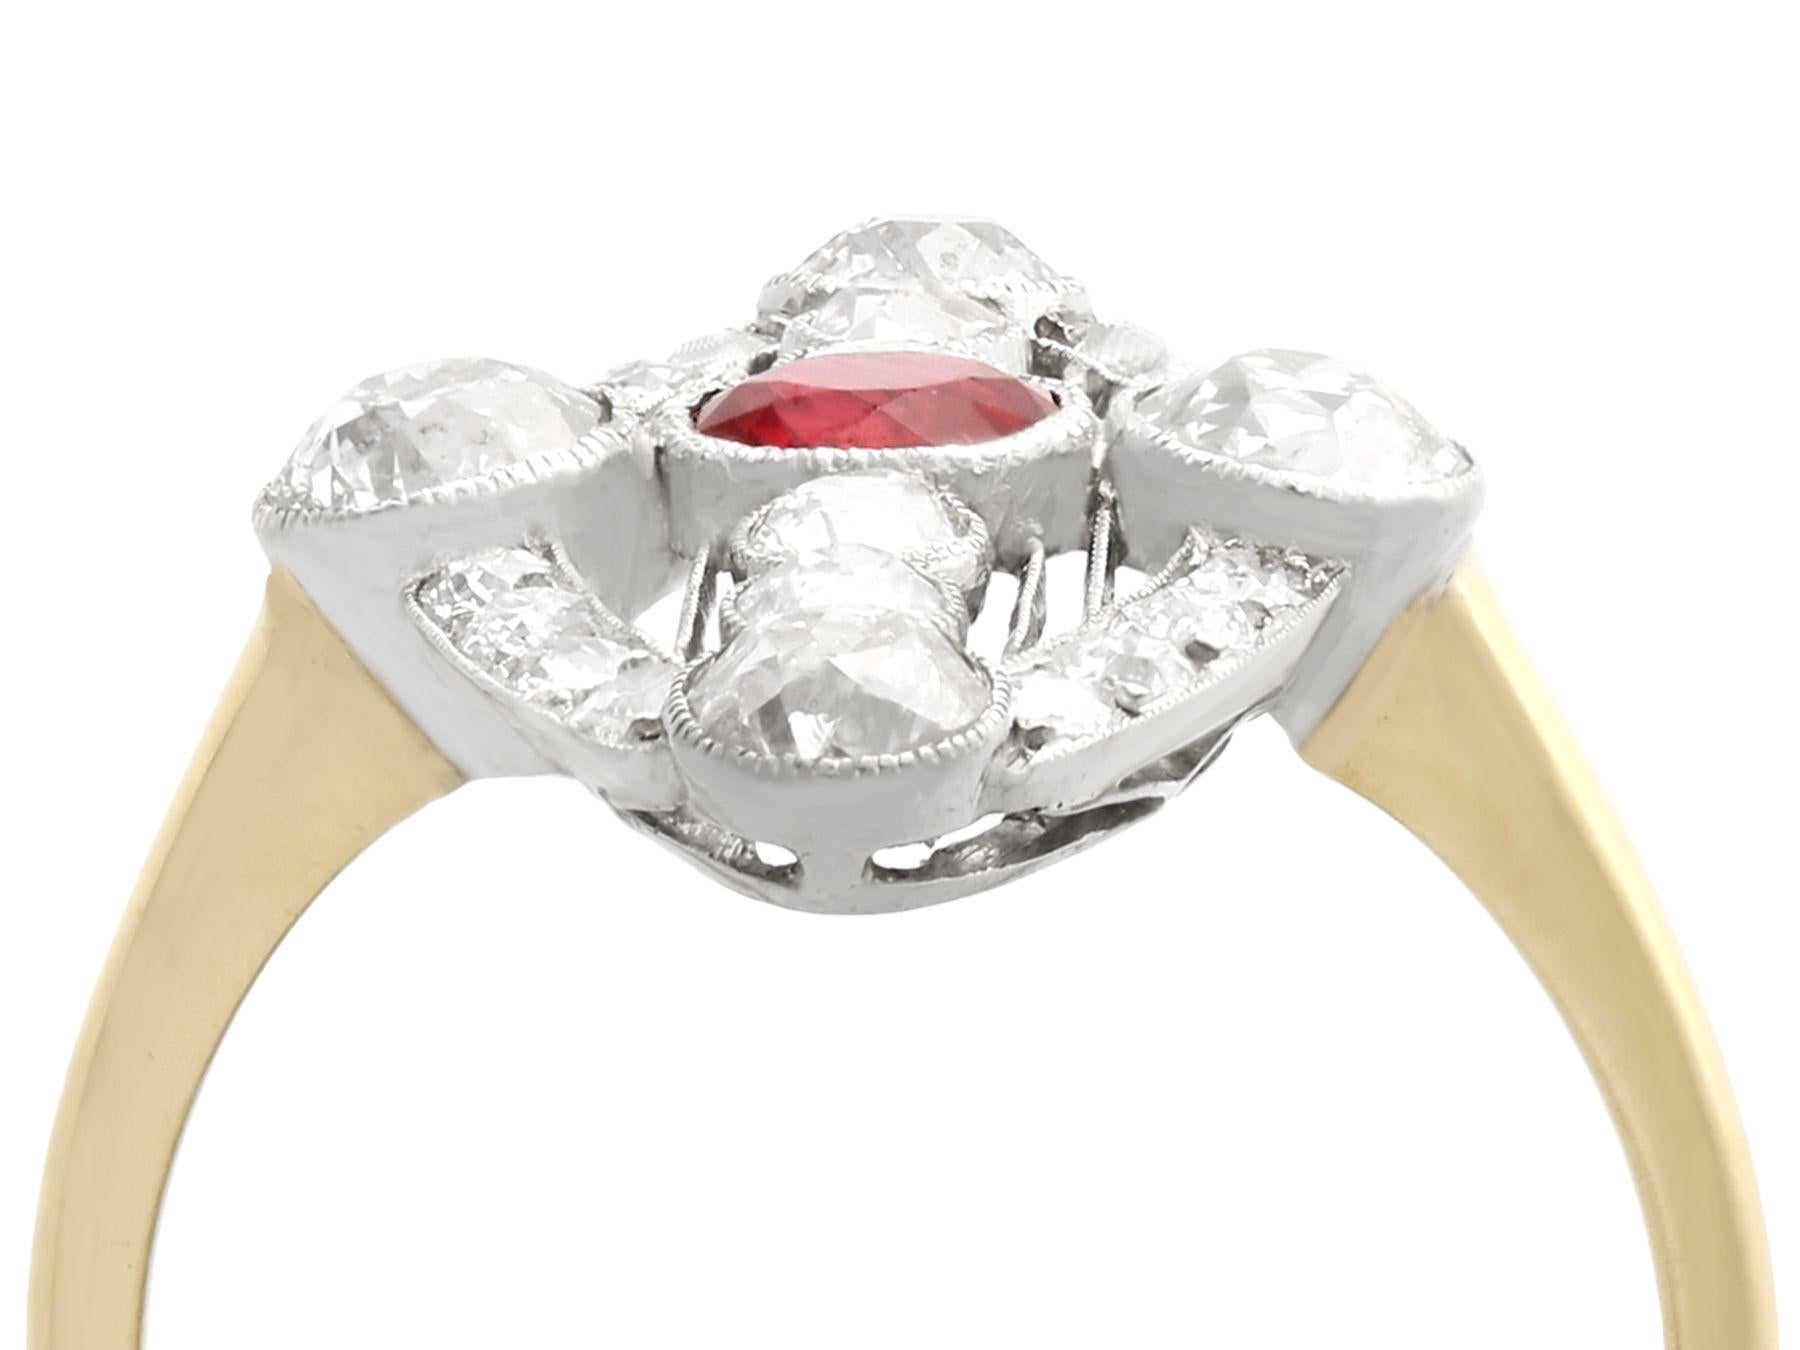 Ein atemberaubender Art-Déco-Ring mit einem mosambikanischen Rubin von 0,62 Karat und einem Diamanten von 1,88 Karat, besetzt mit 18 Karat Gelbgold und 18 Karat Weißgold; Teil unserer vielfältigen antiken Schmuckkollektionen.

Dieser atemberaubende,